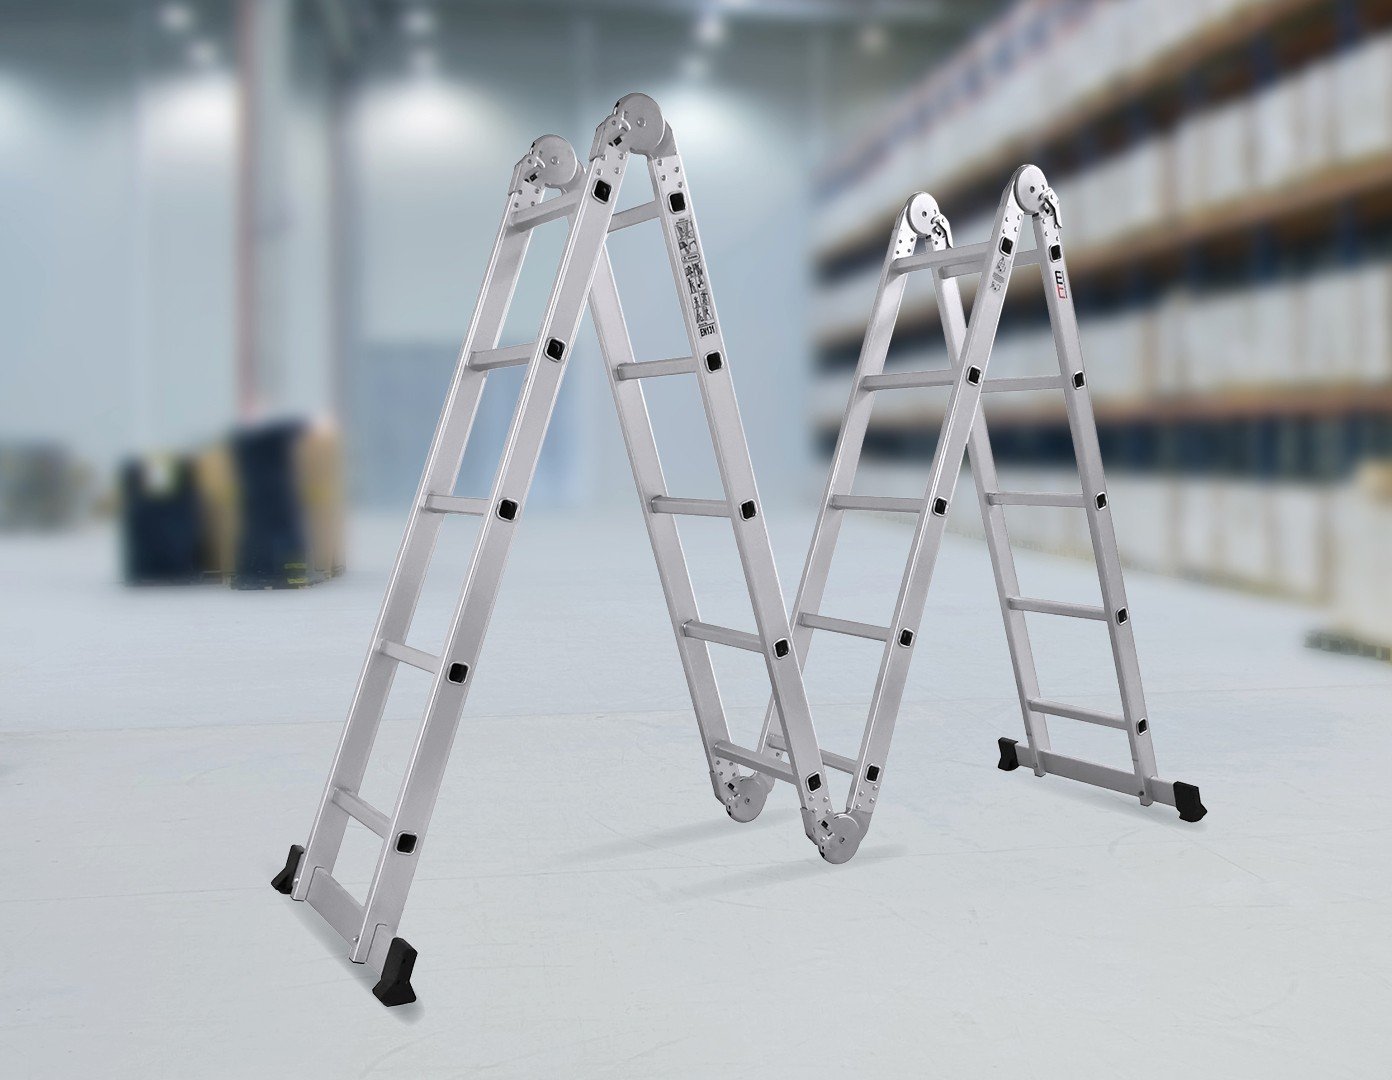 Tools 5.8m Multipurpose Ladder Aluminium